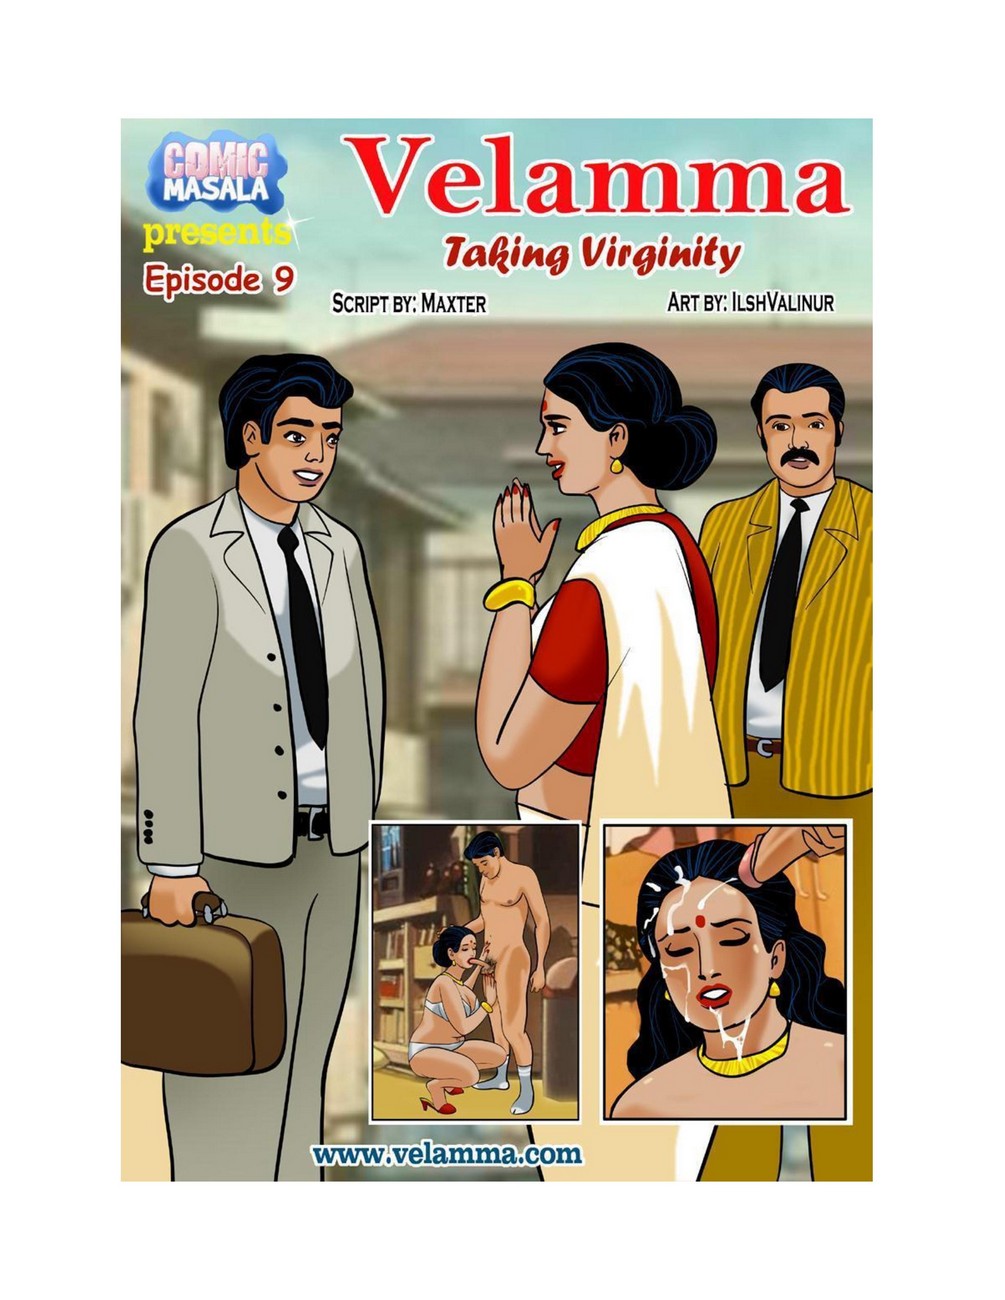 Velamma 9 Taking Virginity00